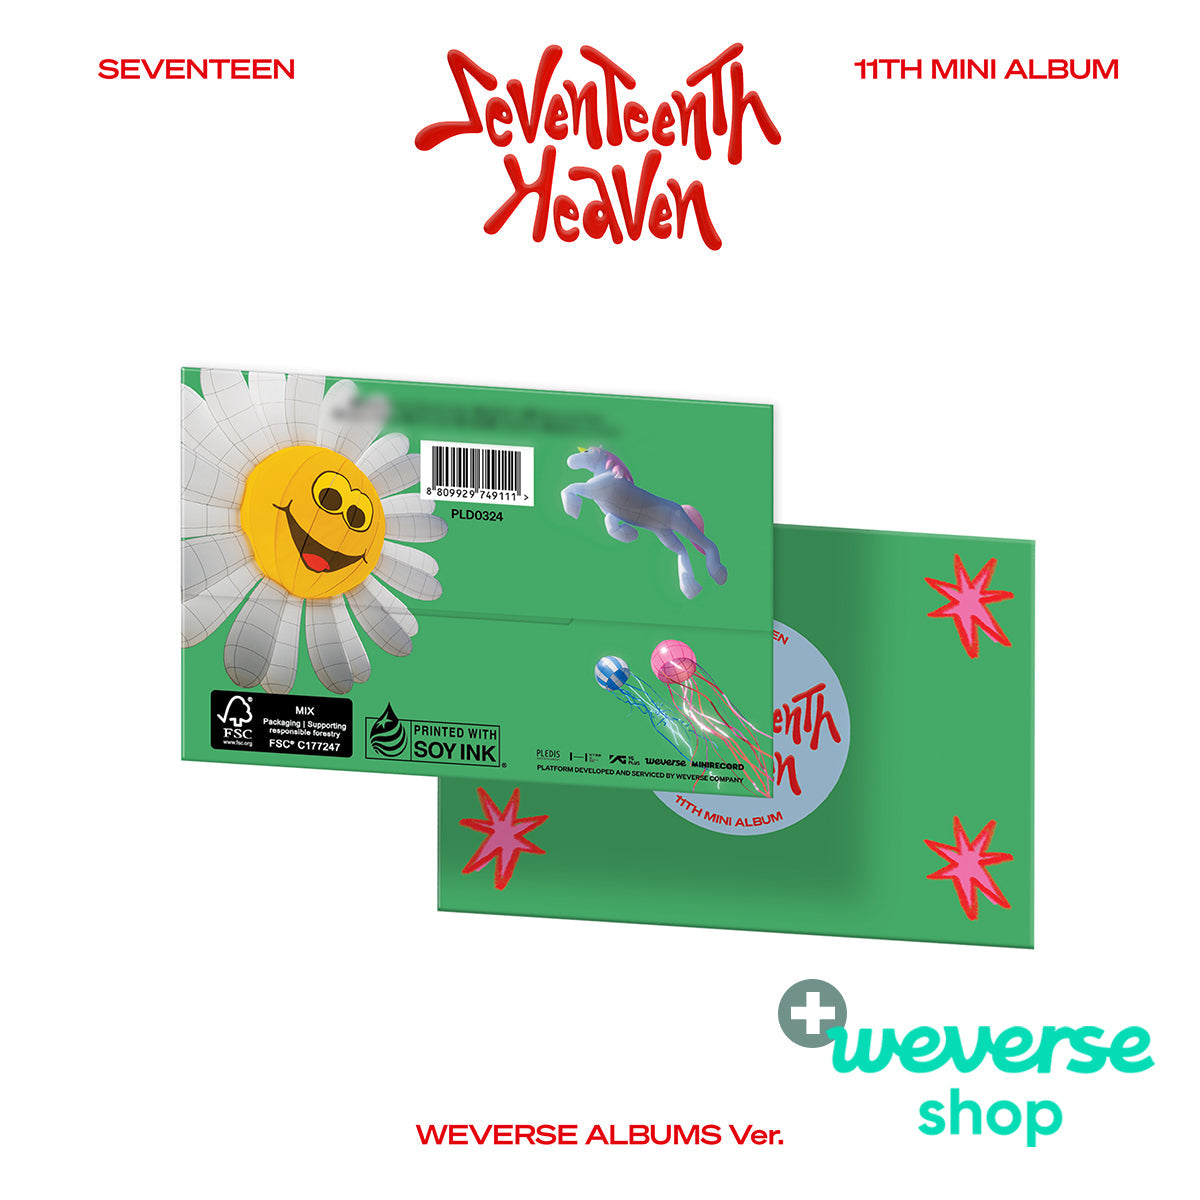 SEVENTEEN - SEVENTEENTH HEAVEN (Weverse Albums ver.) + Weverse Shop P.O.B